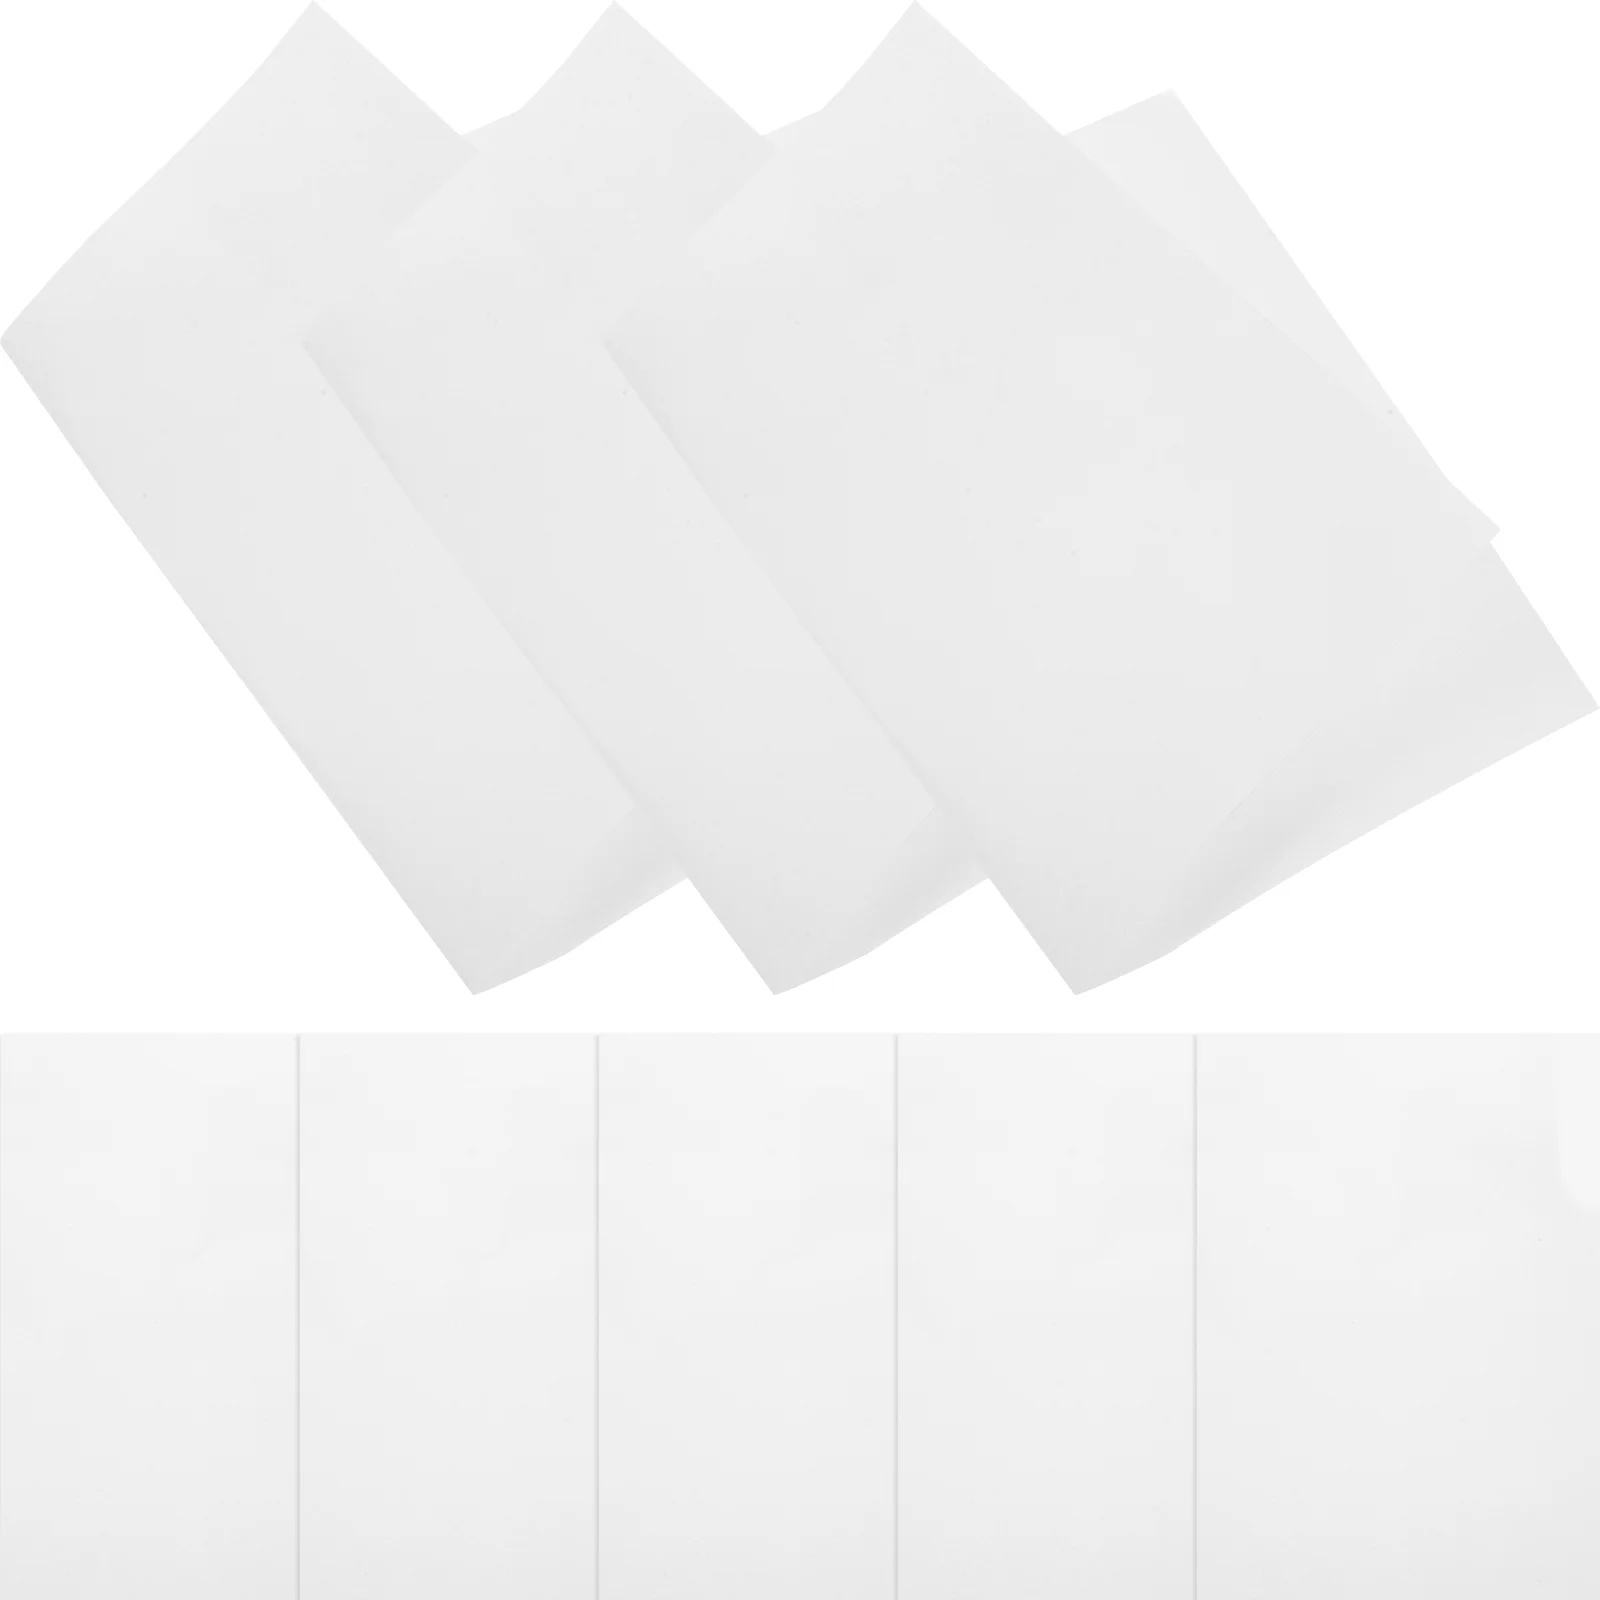 20шт бумаги для термопереноса, бумага для сублимационной печати формата А4 (белая)